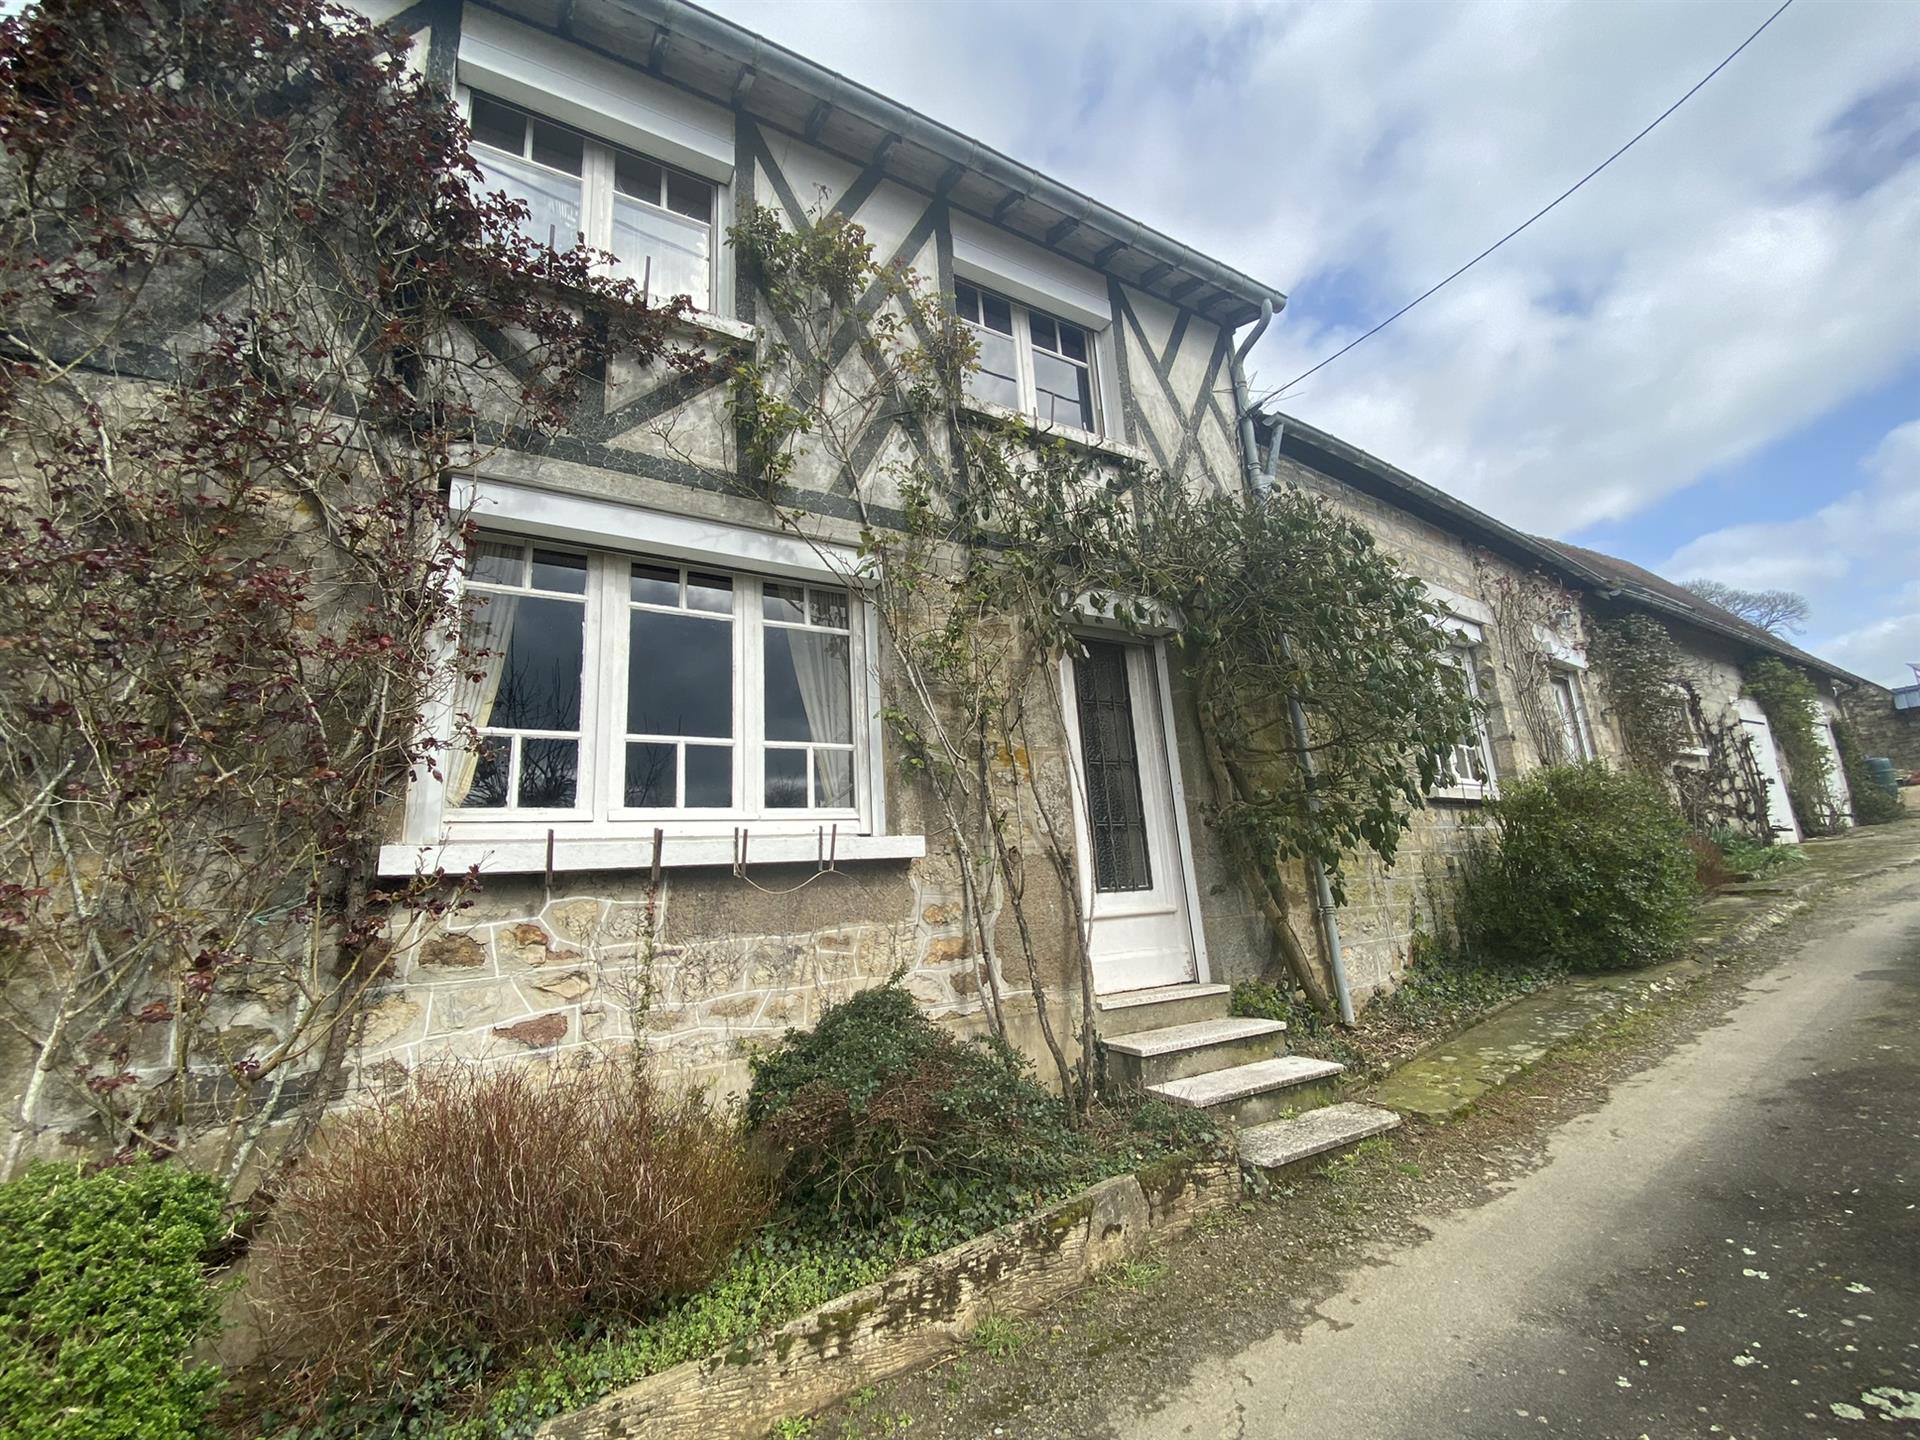 Maison sise à Juvigny-Val-D'Andaine (Orne) (61140), d'environ 96 m² habitable et d'environ